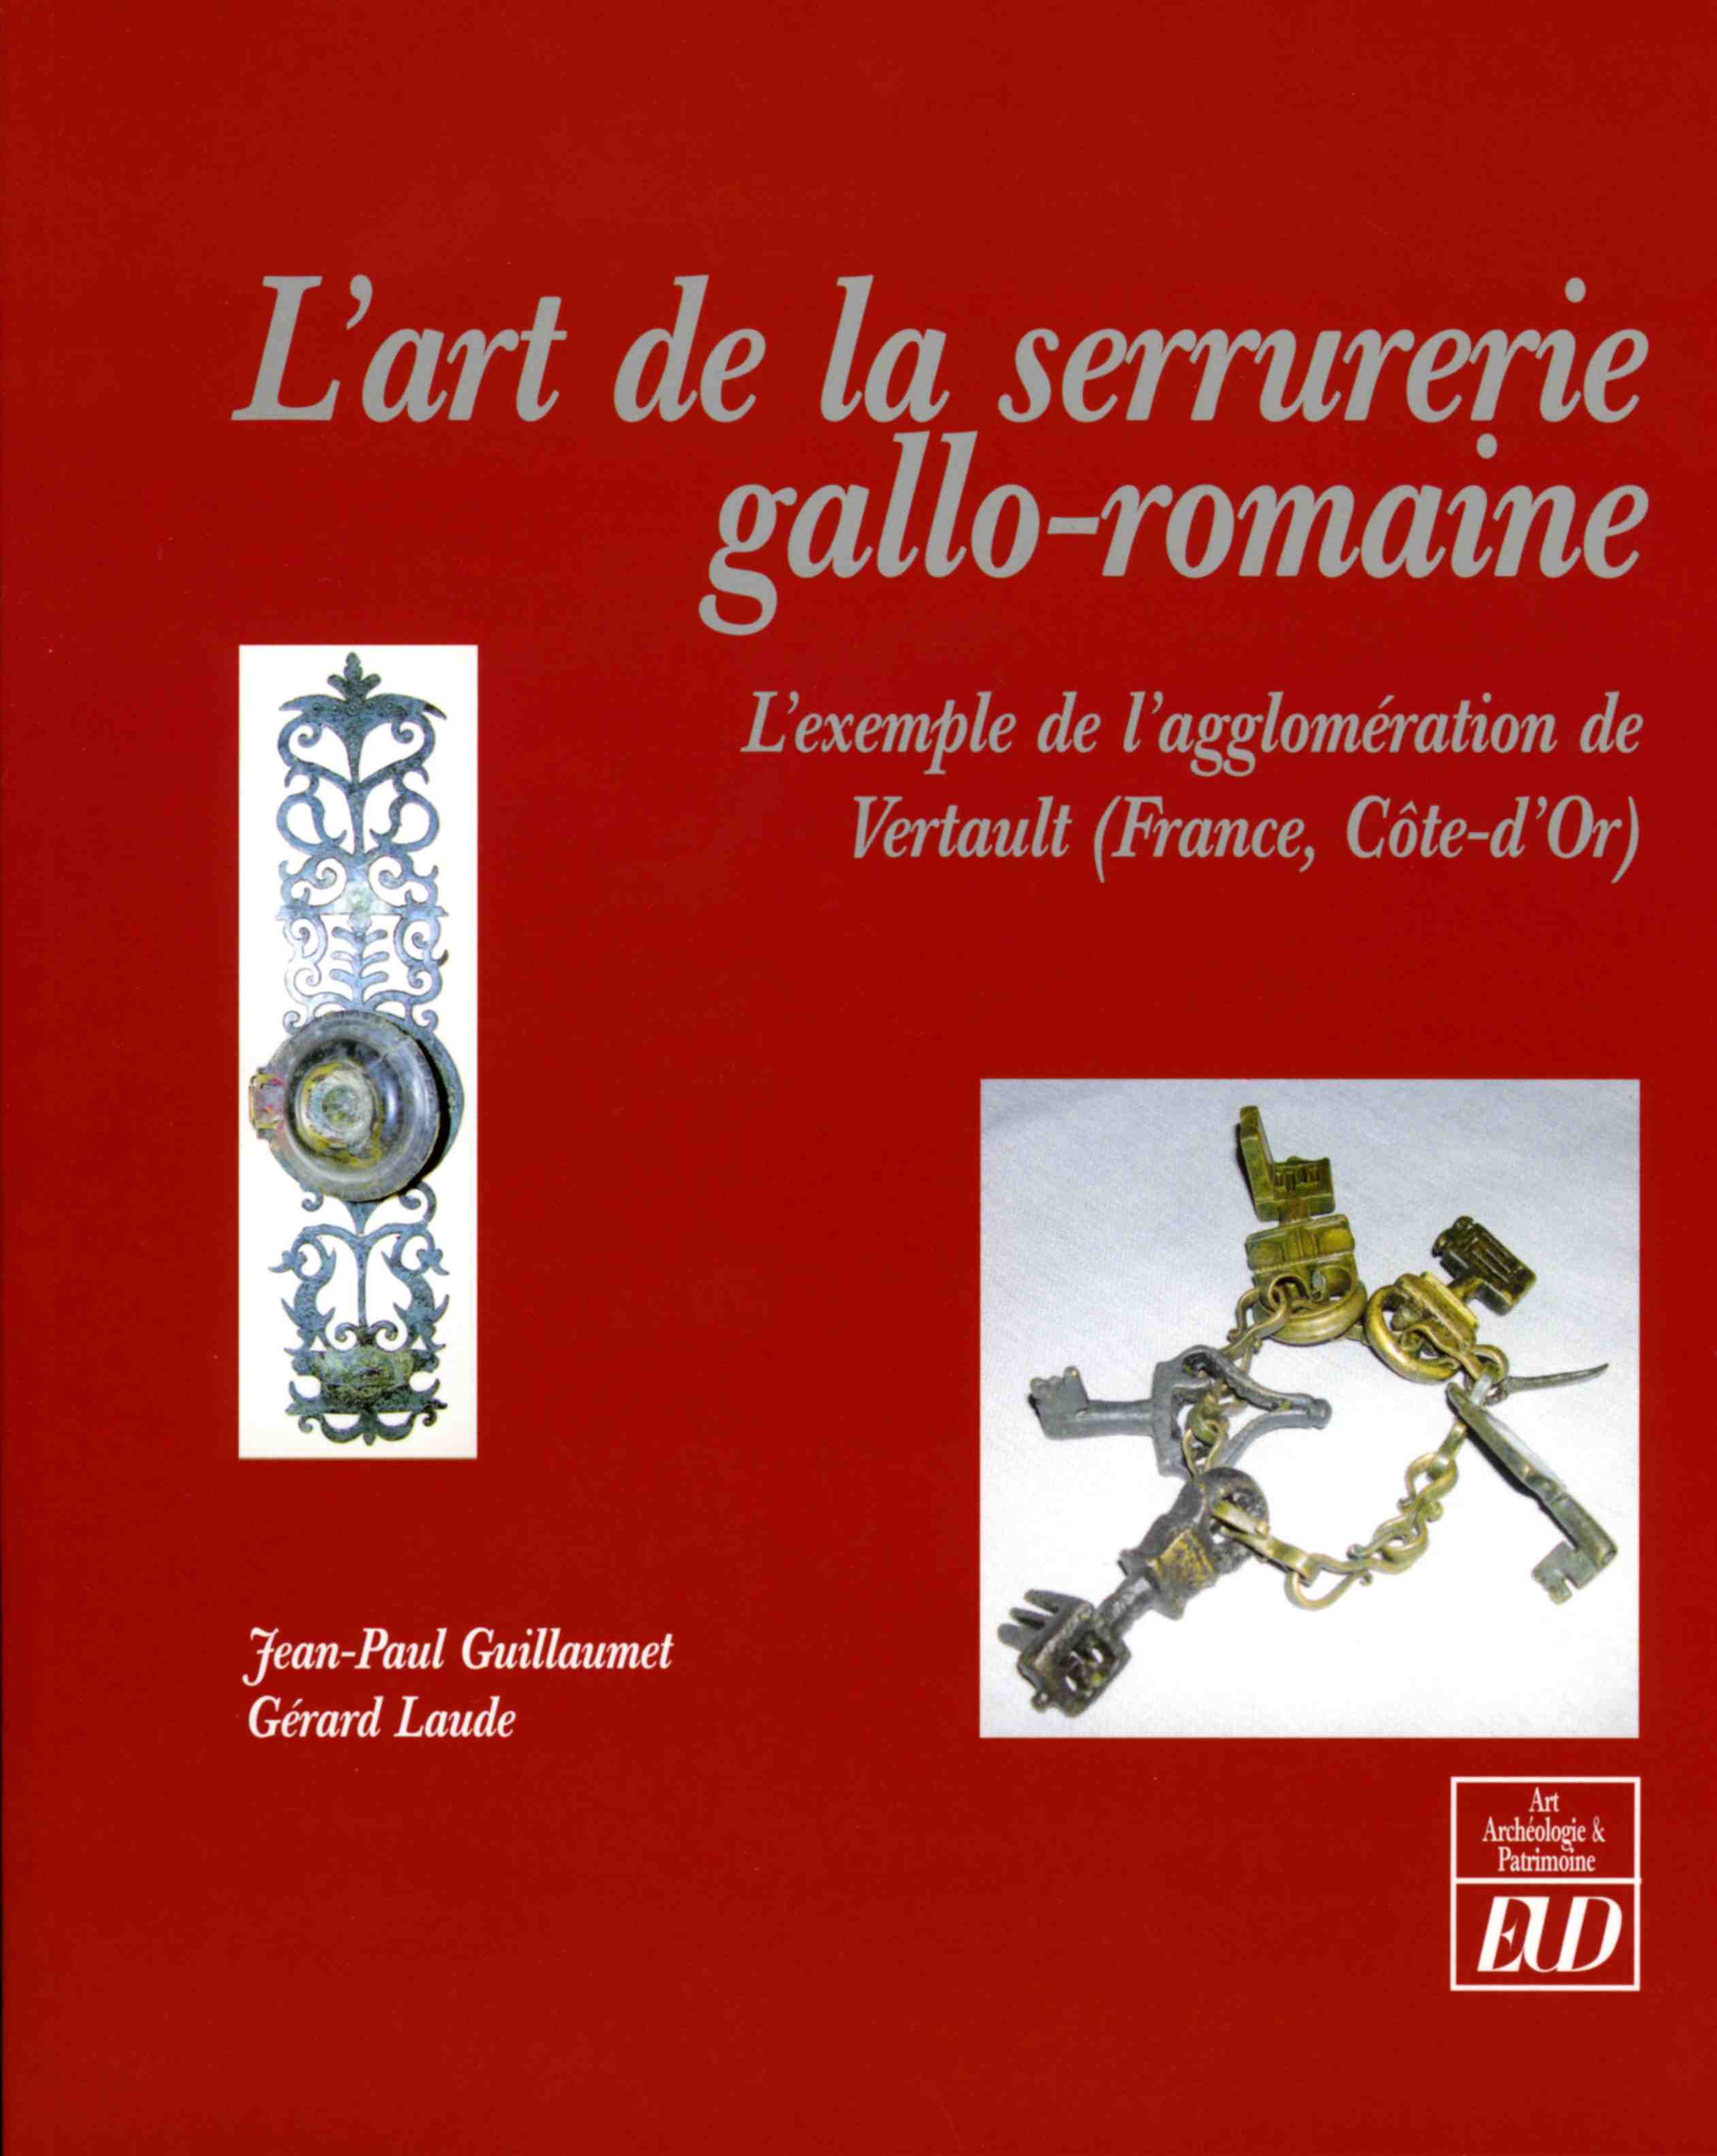 ÉPUISÉ - L'art de la serrurerie gallo-romaine. L'exemple de l'agglomération de Vertault (France, Côte-d'Or), 2009, 160 p.